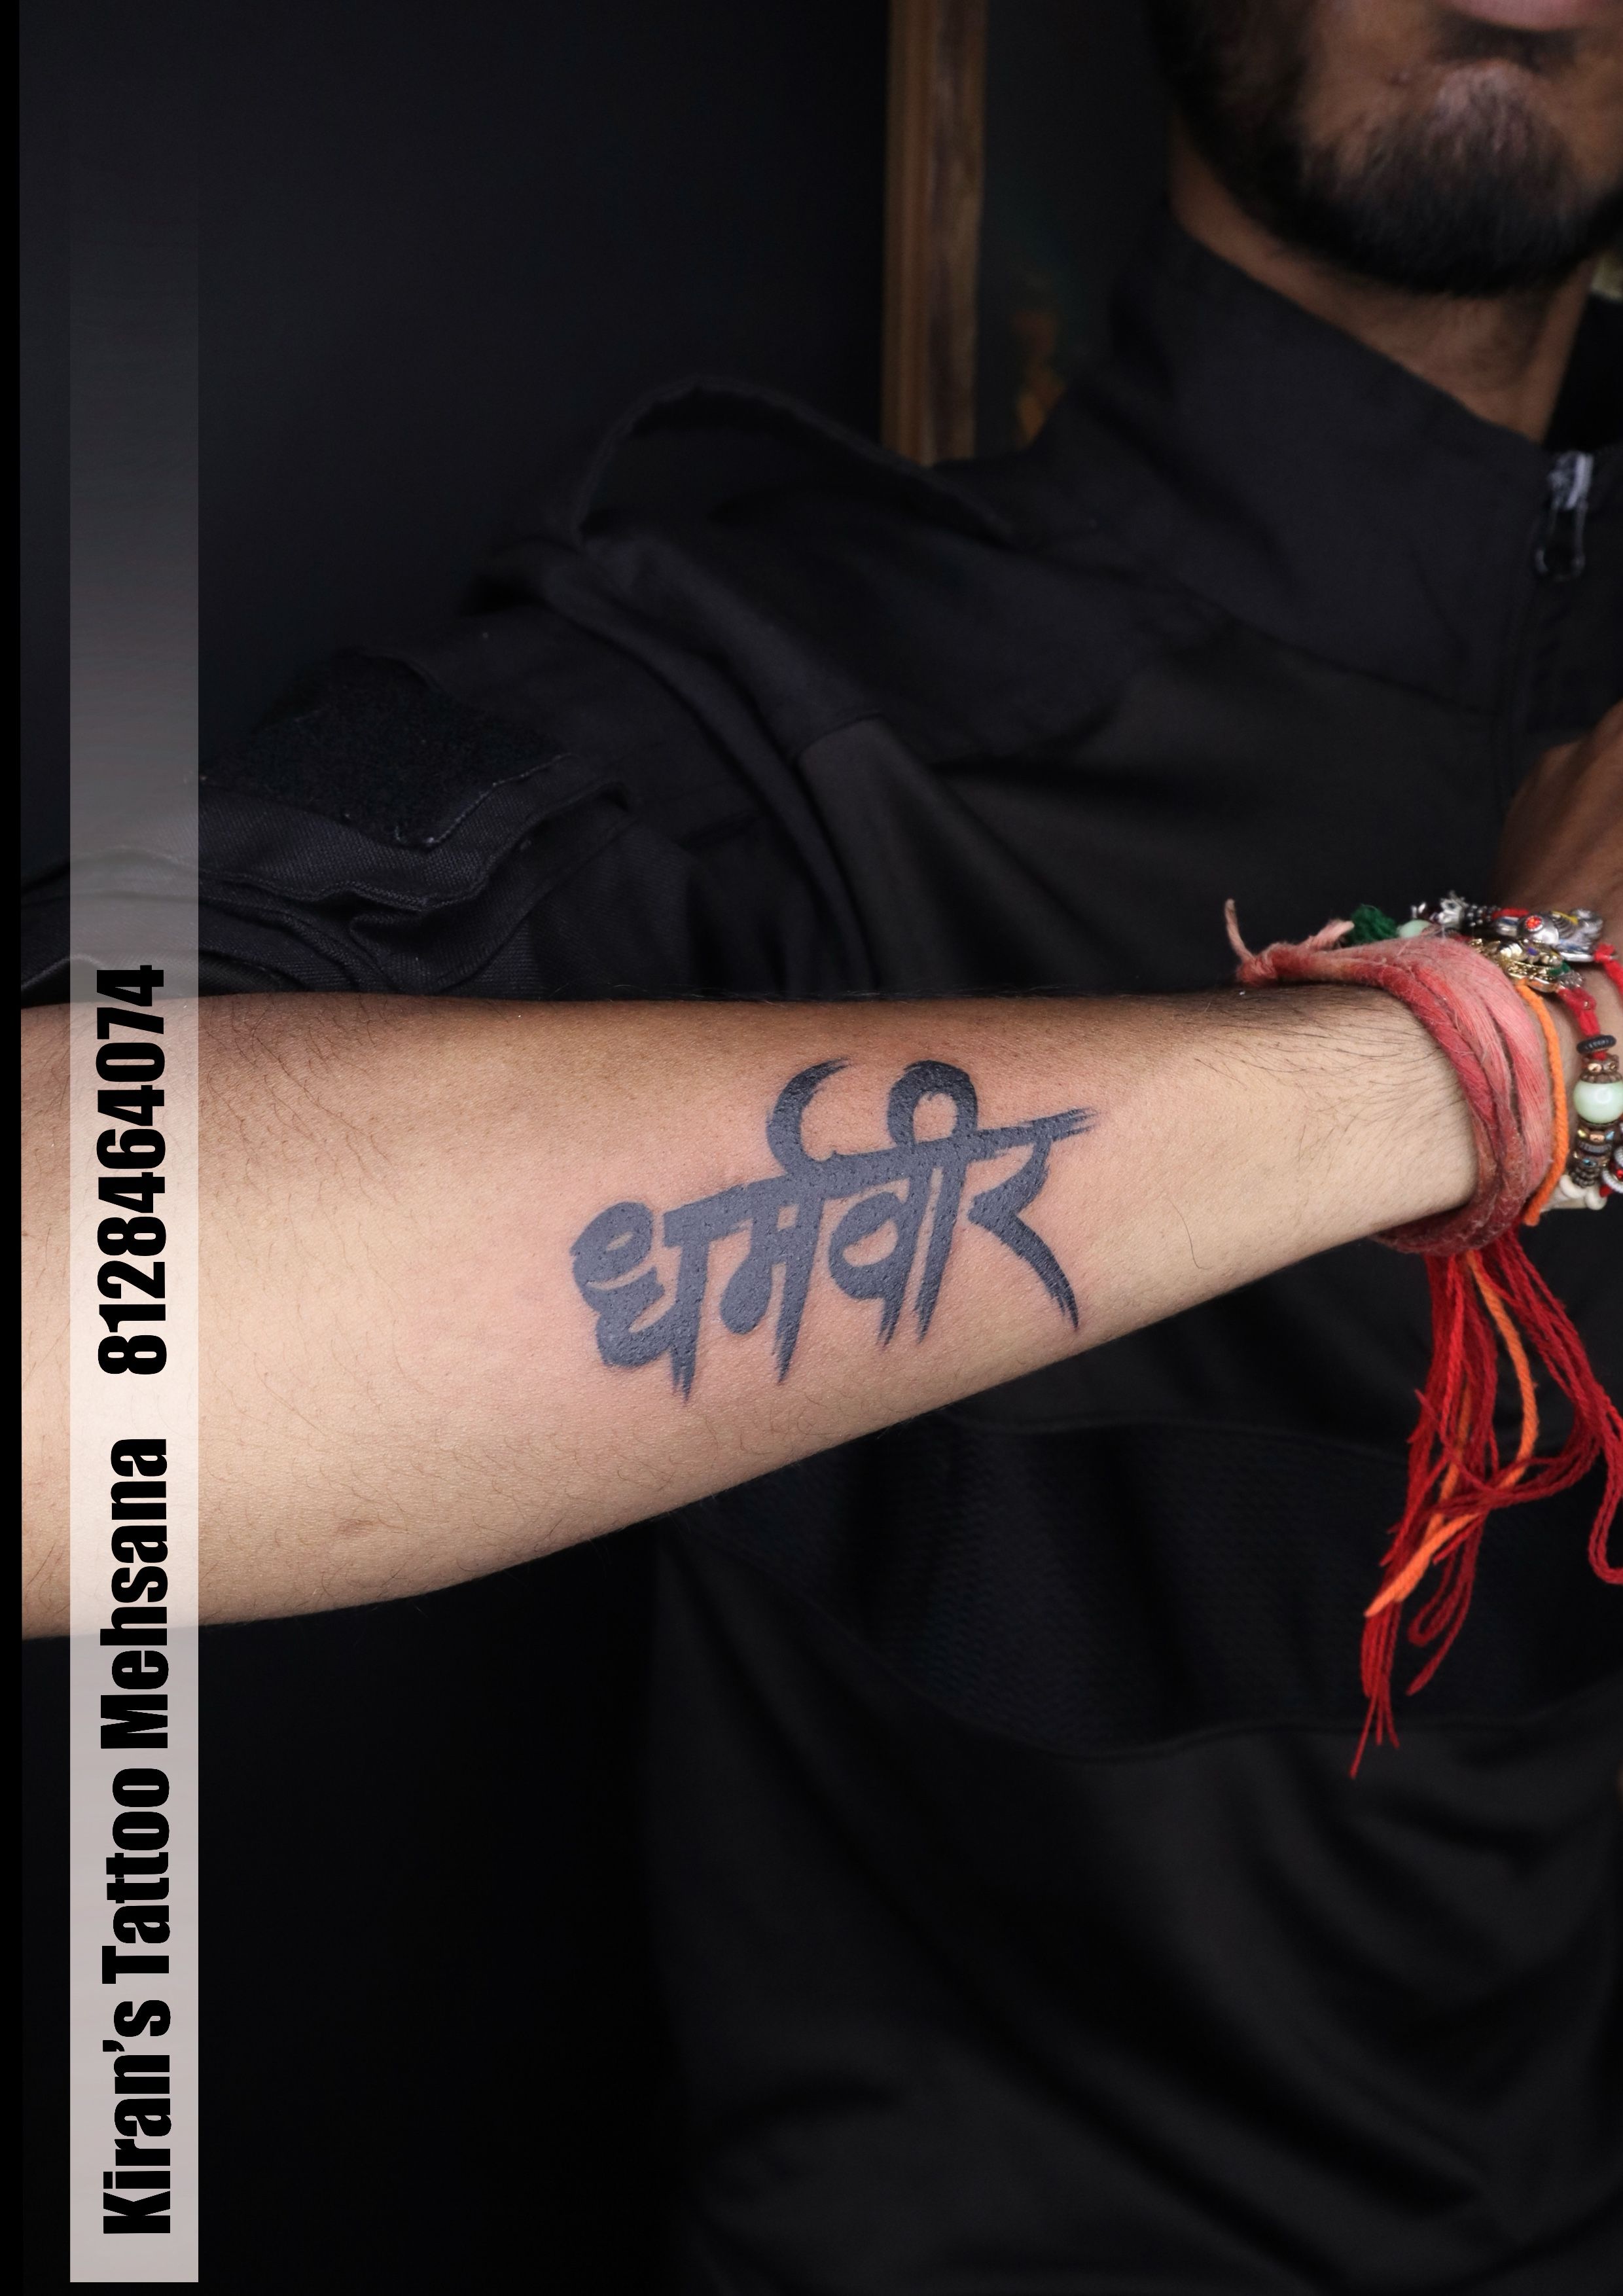 khushi #nametattoo #royaltattoostudio #rampuraphul #bathinda #punjab #art  #ink #tattoo | By Royal tattoos studioFacebook